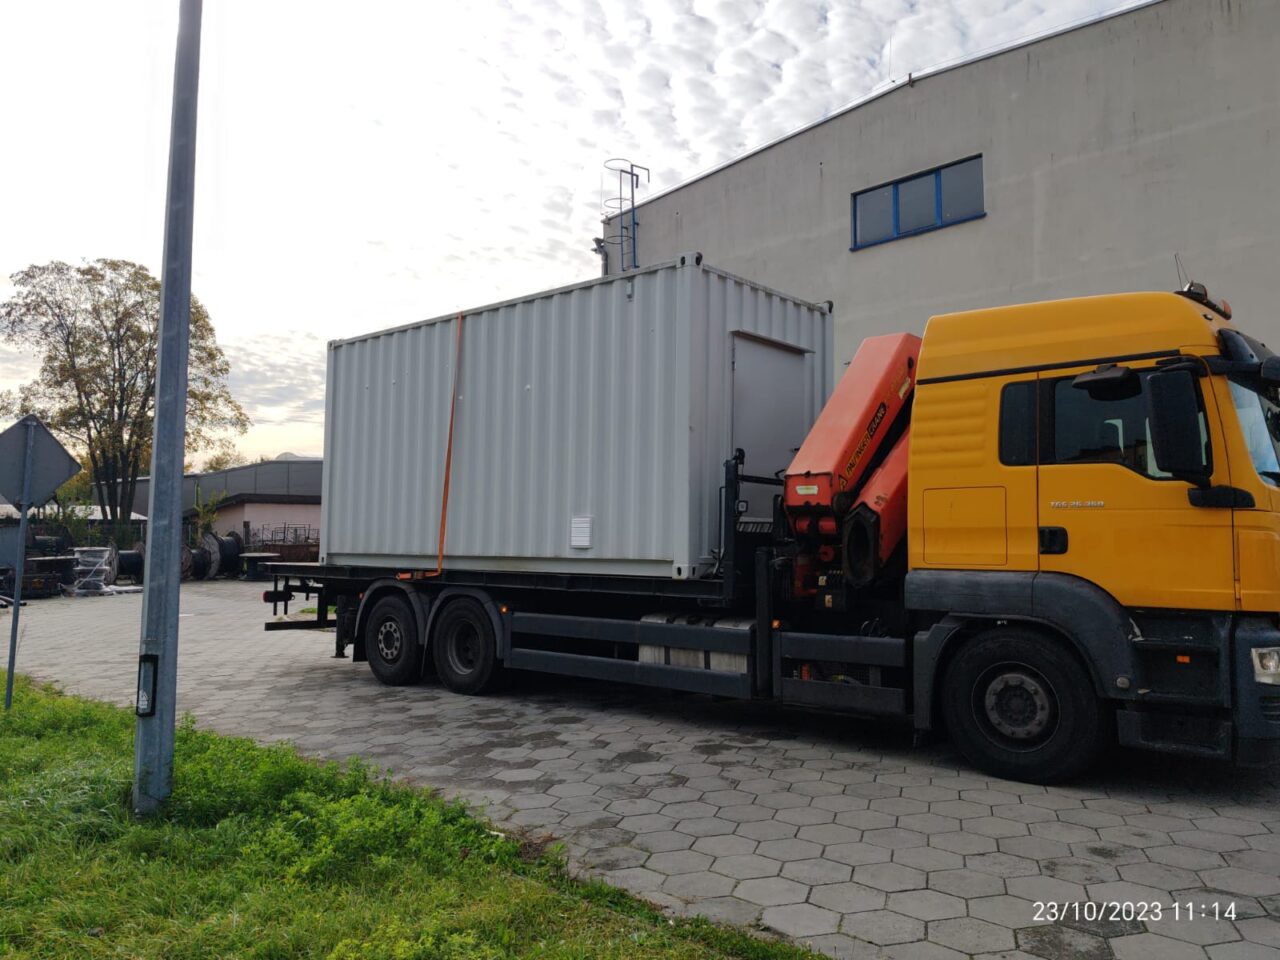 Ciężarówka z żółtą kabiną i kontenerem na naczepie stoi na brukowanym parkingu przy budynku przemysłowym.